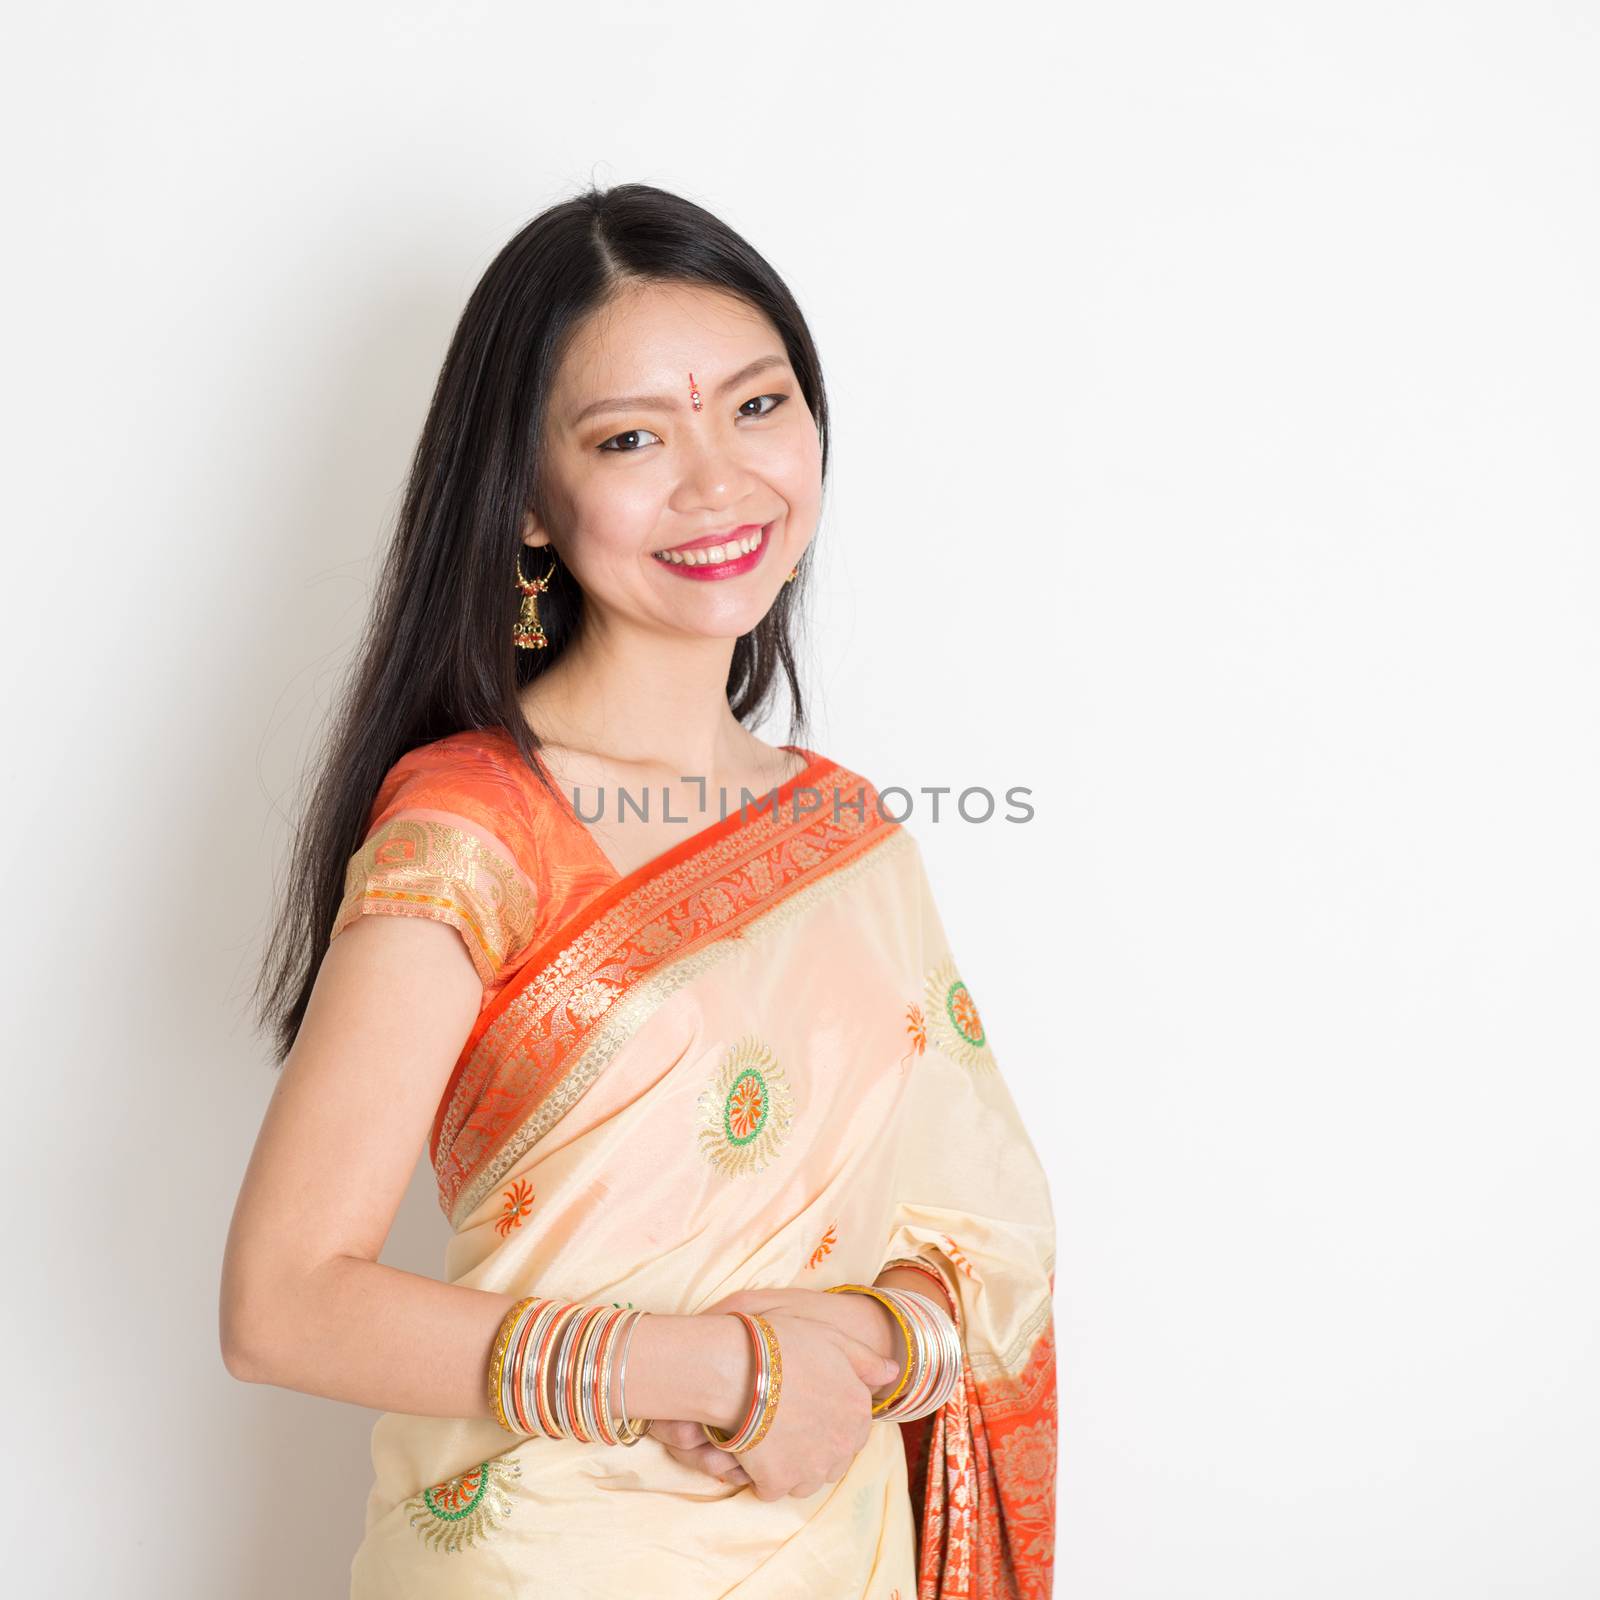 Woman in Indian sari by szefei